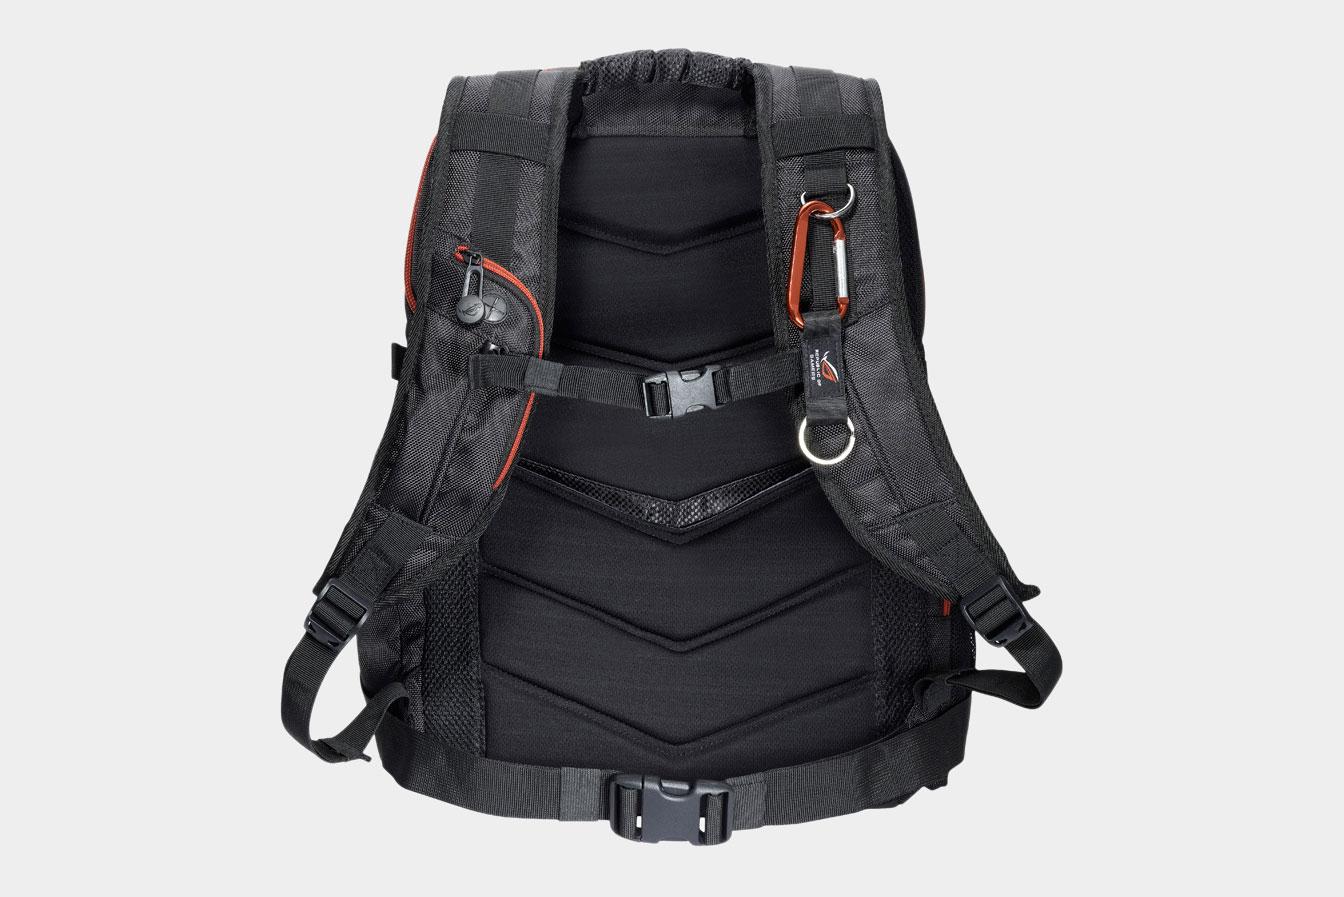 The back side of the Asus ROG Nomad V2 backpack.